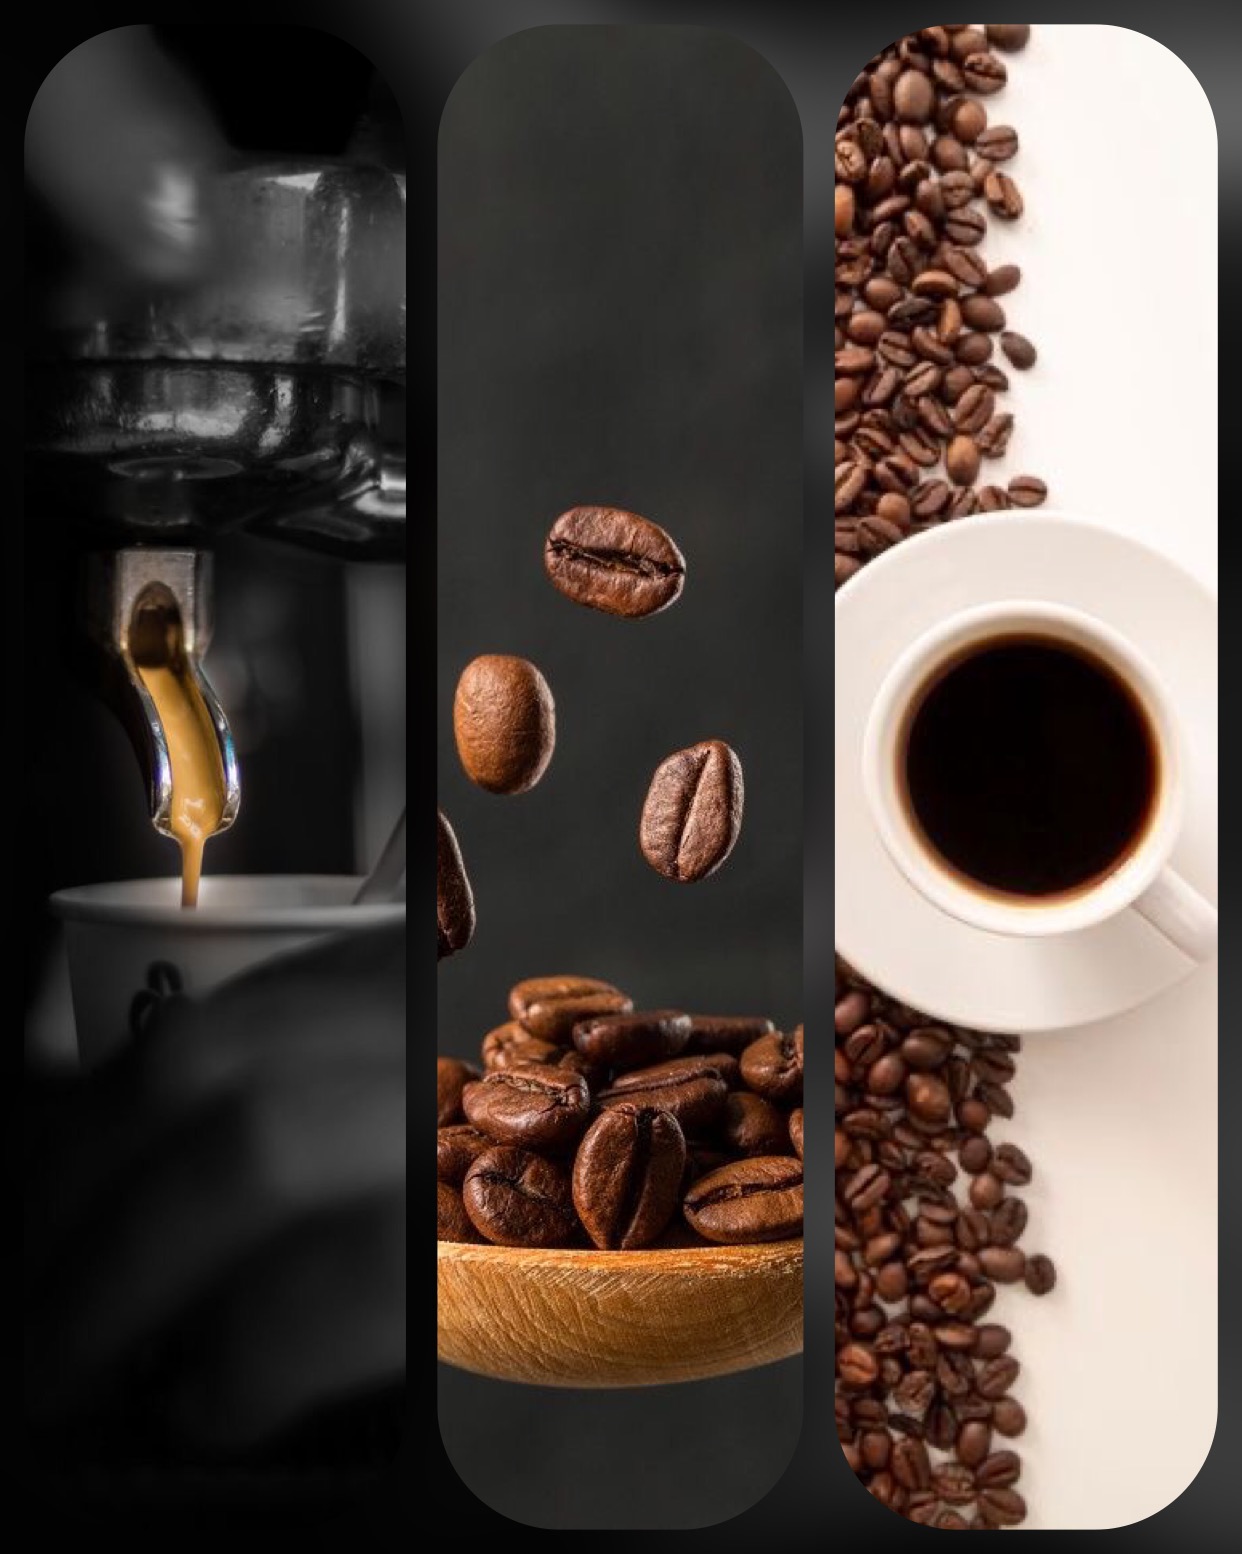 قهوه 100عربیکا کینگ کافه